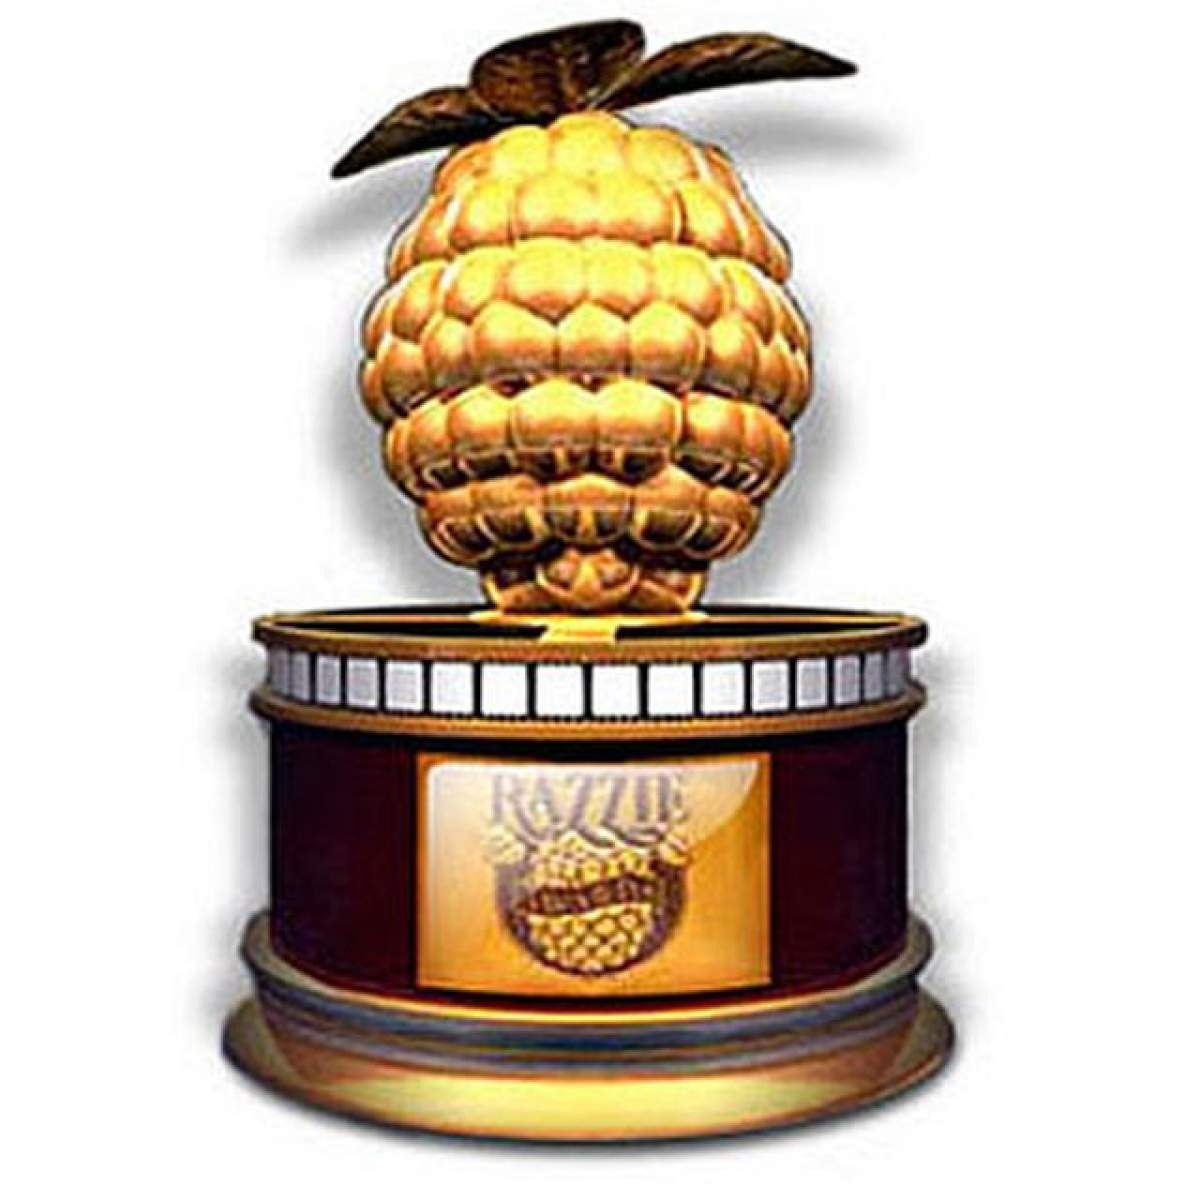 Anul trecut a câștigat Oscarul, anul acesta s-a procopsit cu o rușinoasă ”Zmeură de Aur”. Lista completă a câștigătorilor